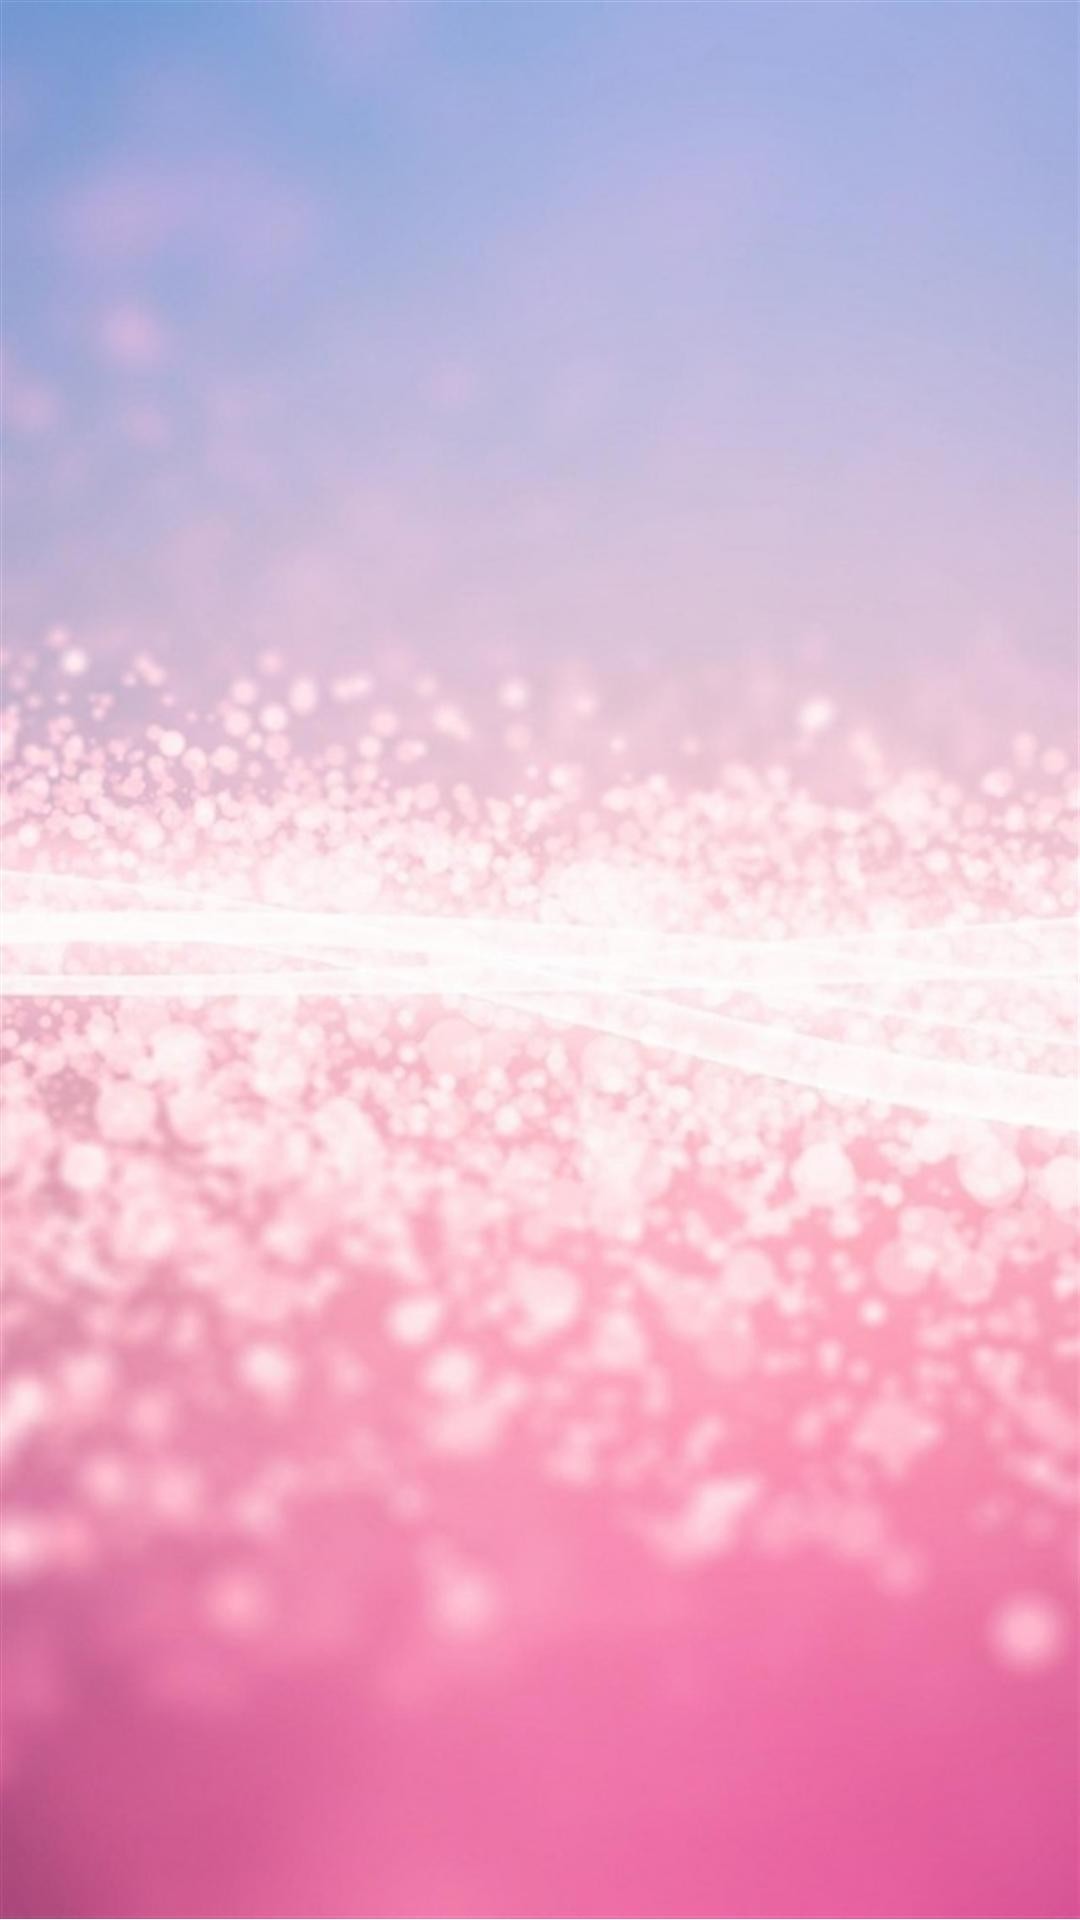 1080x1920 Pink Glitter Stardust Smartphone Wallpaper HD â GetPhotos